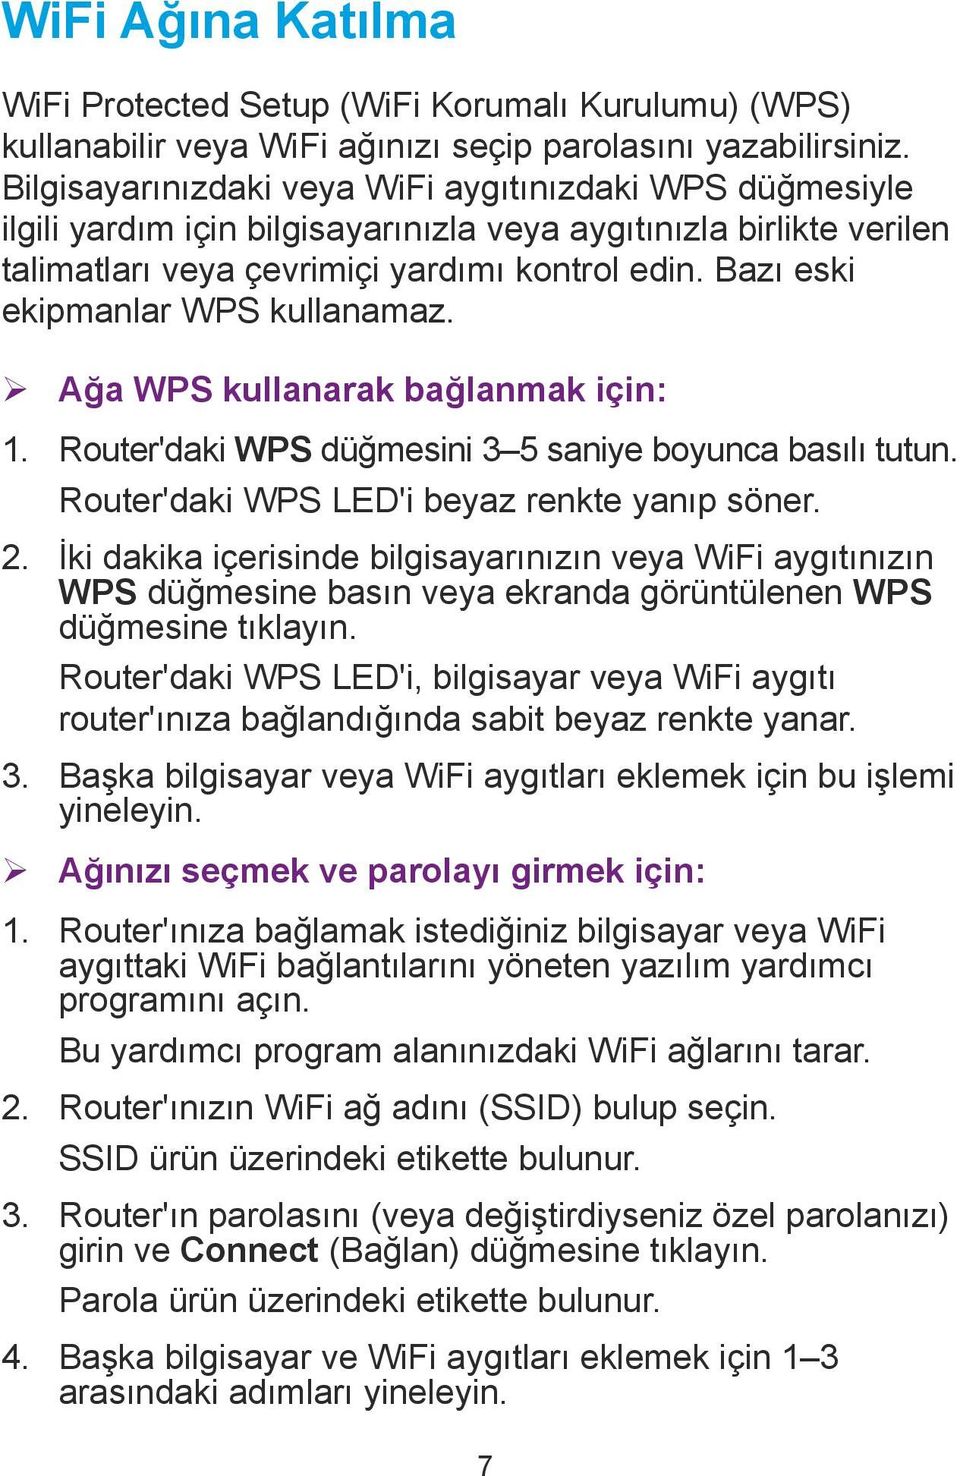 Bazı eski ekipmanlar WPS kullanamaz. ¾ Ağa WPS kullanarak bağlanmak için: 1. Router'daki WPS düğmesini 3 5 saniye boyunca basılı tutun. Router'daki WPS LED'i beyaz renkte yanıp söner. 2.